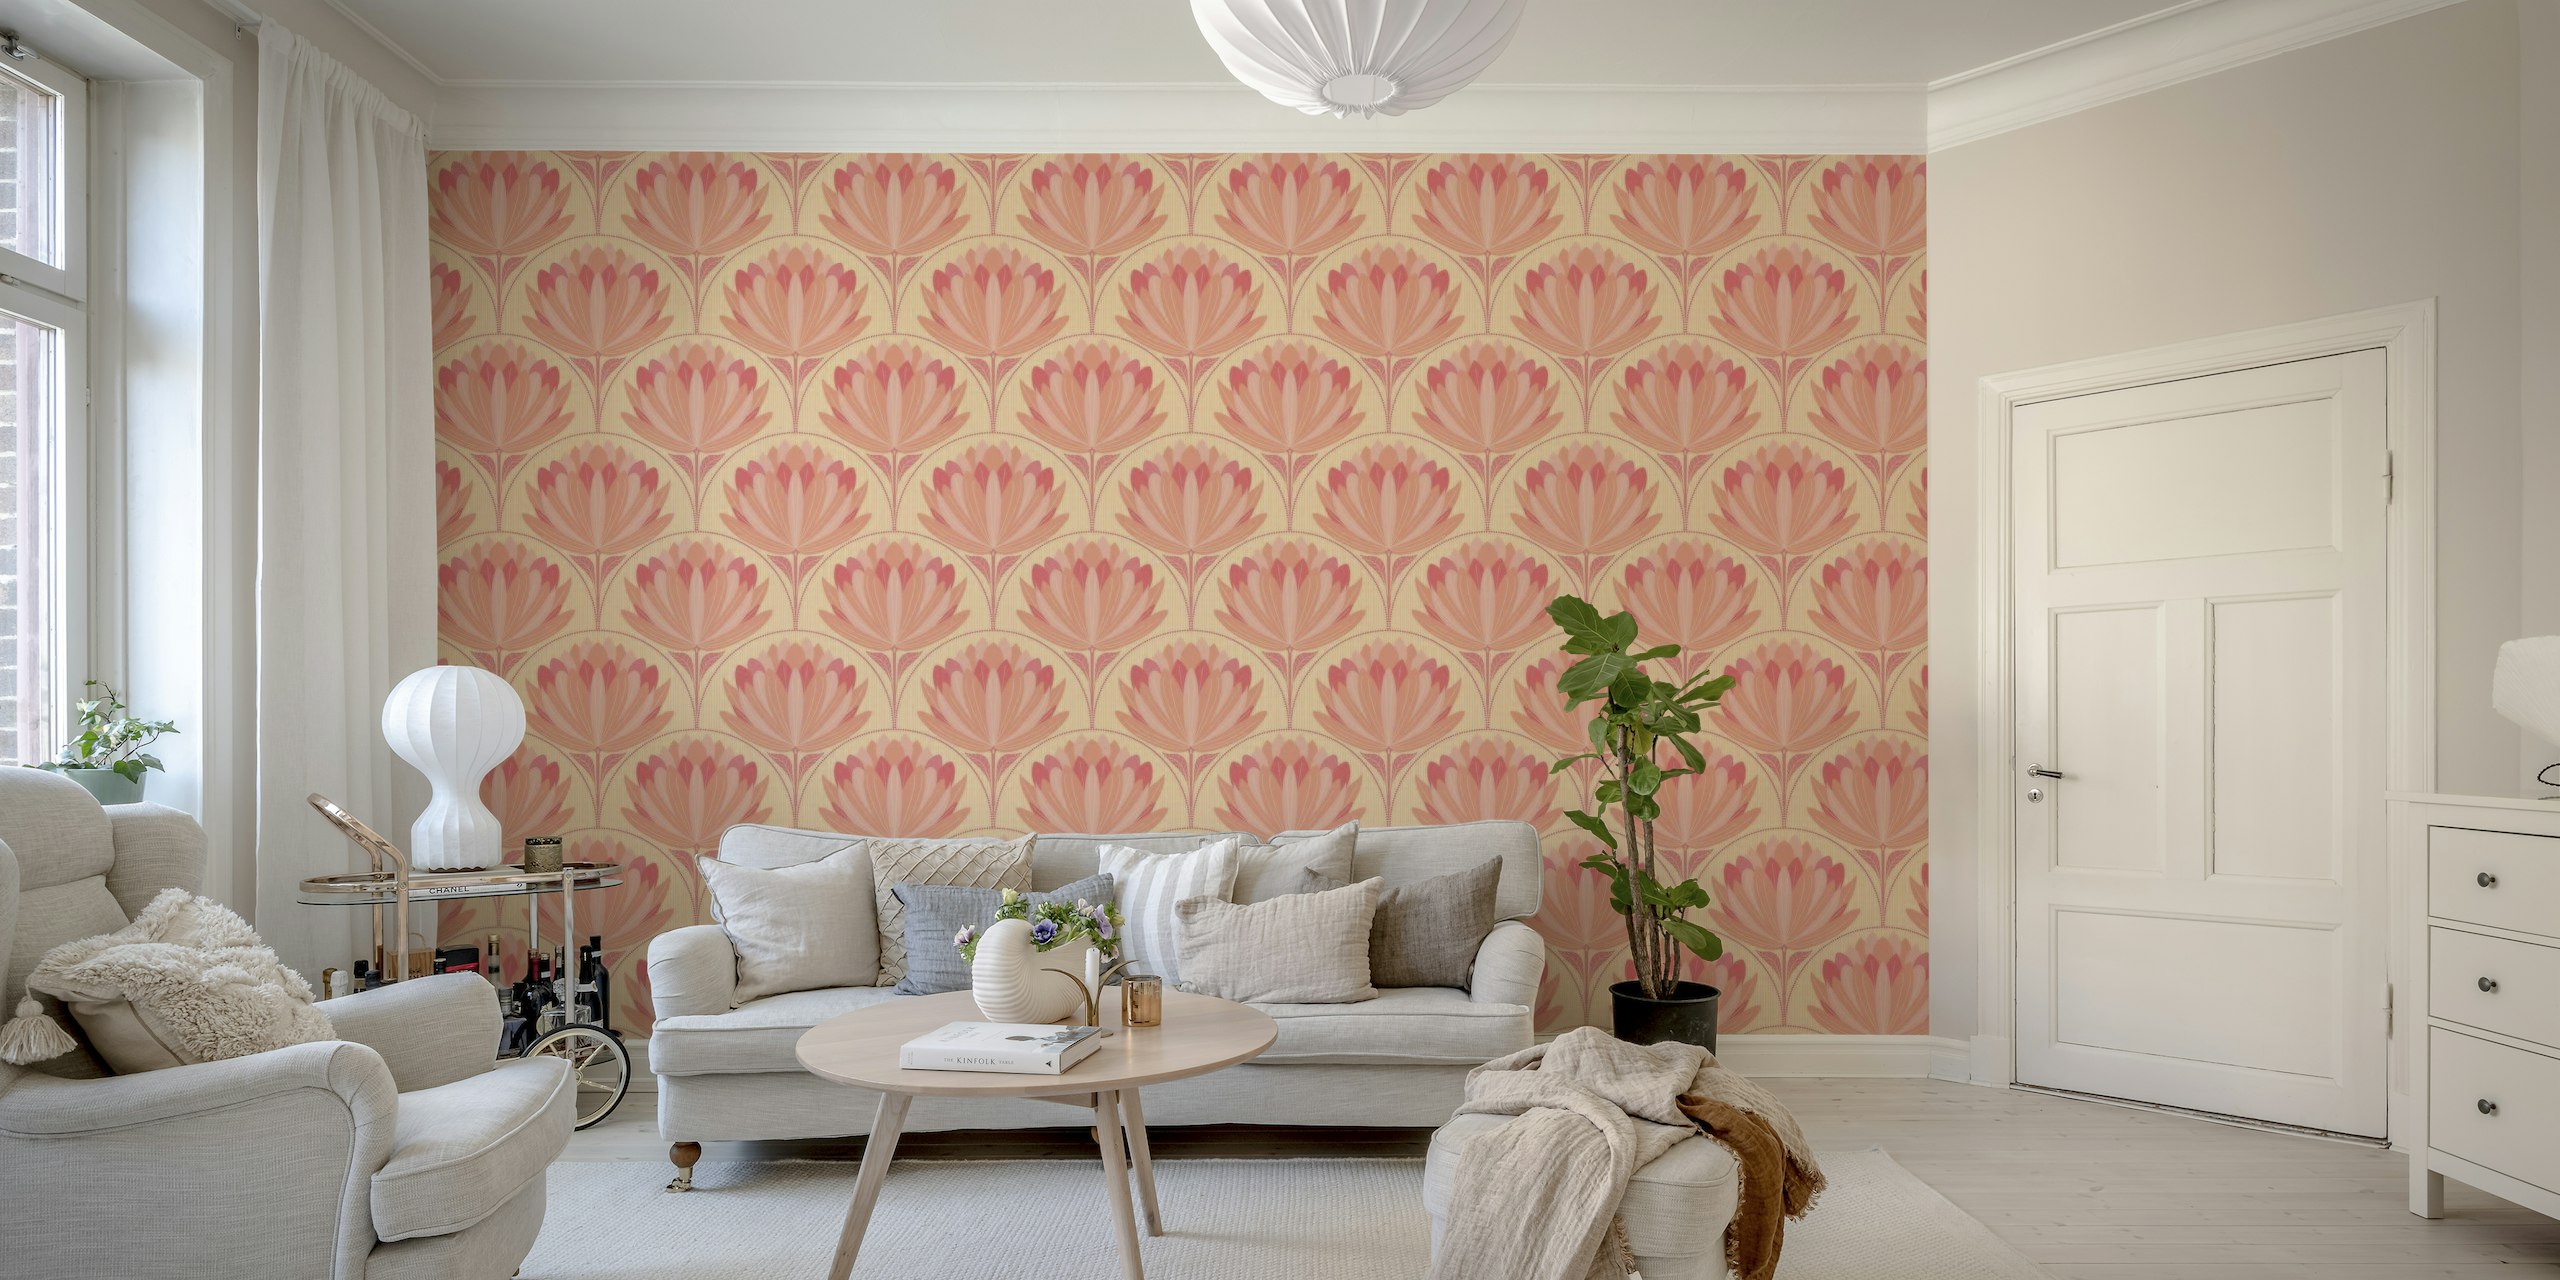 Peach Lotus fotobehang met koraal en perzikkleurige bloemen op een subtiele patroonachtergrond